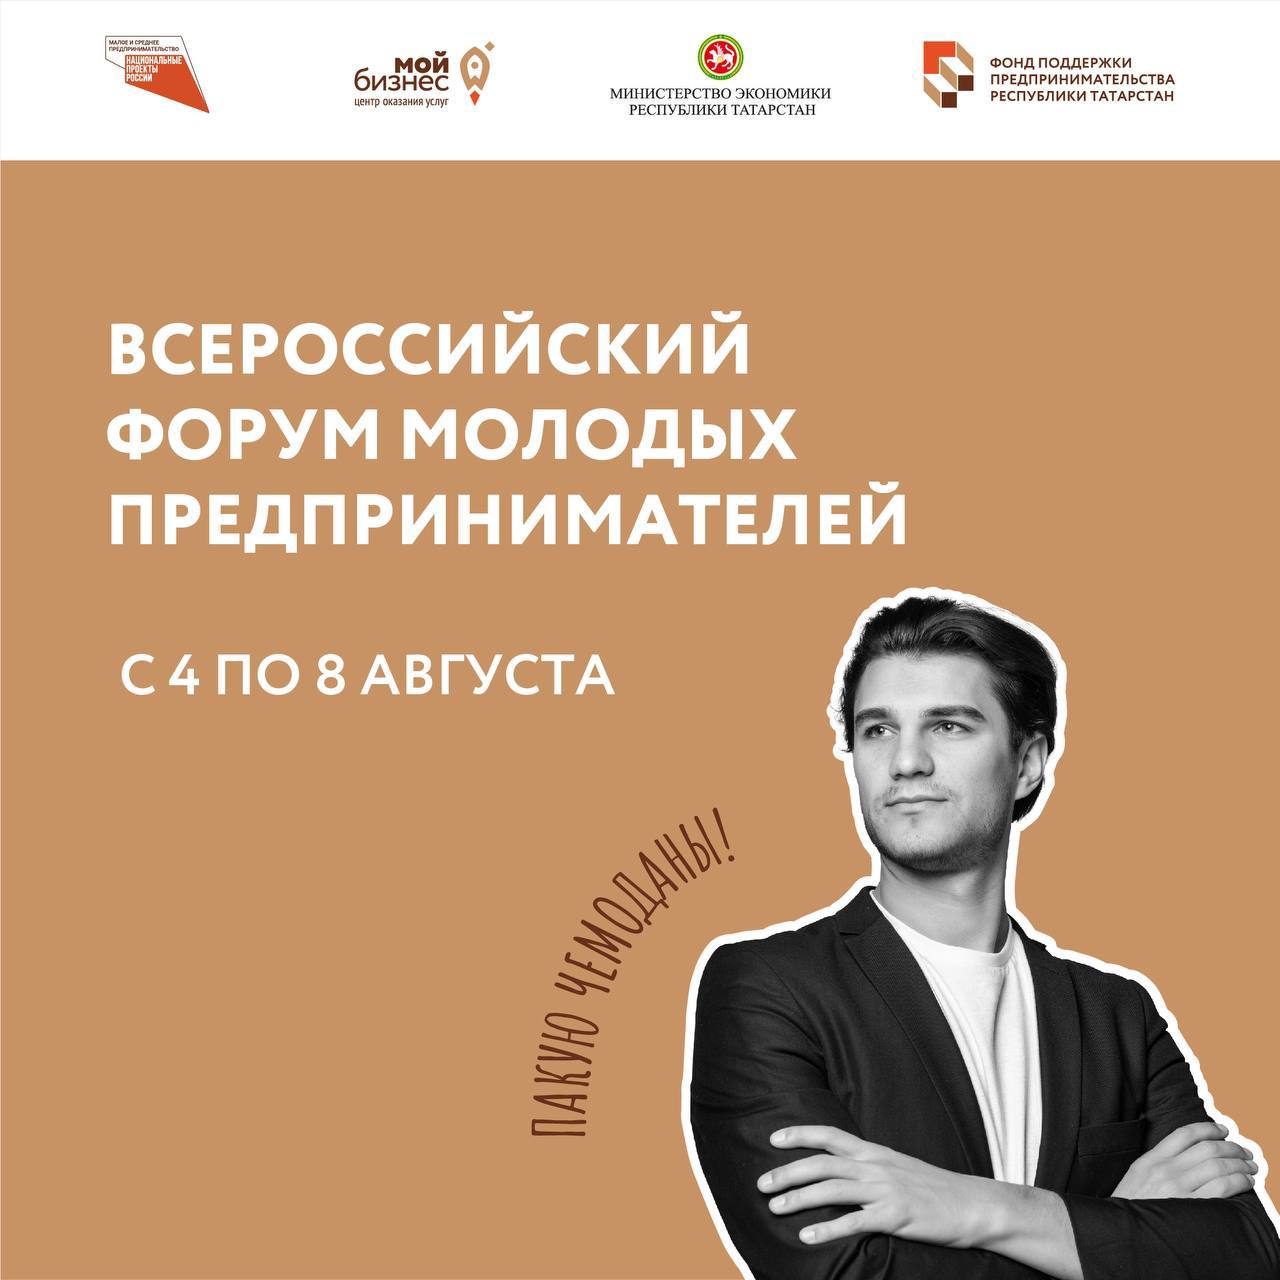 Всероссийский Форум молодых предпринимателей